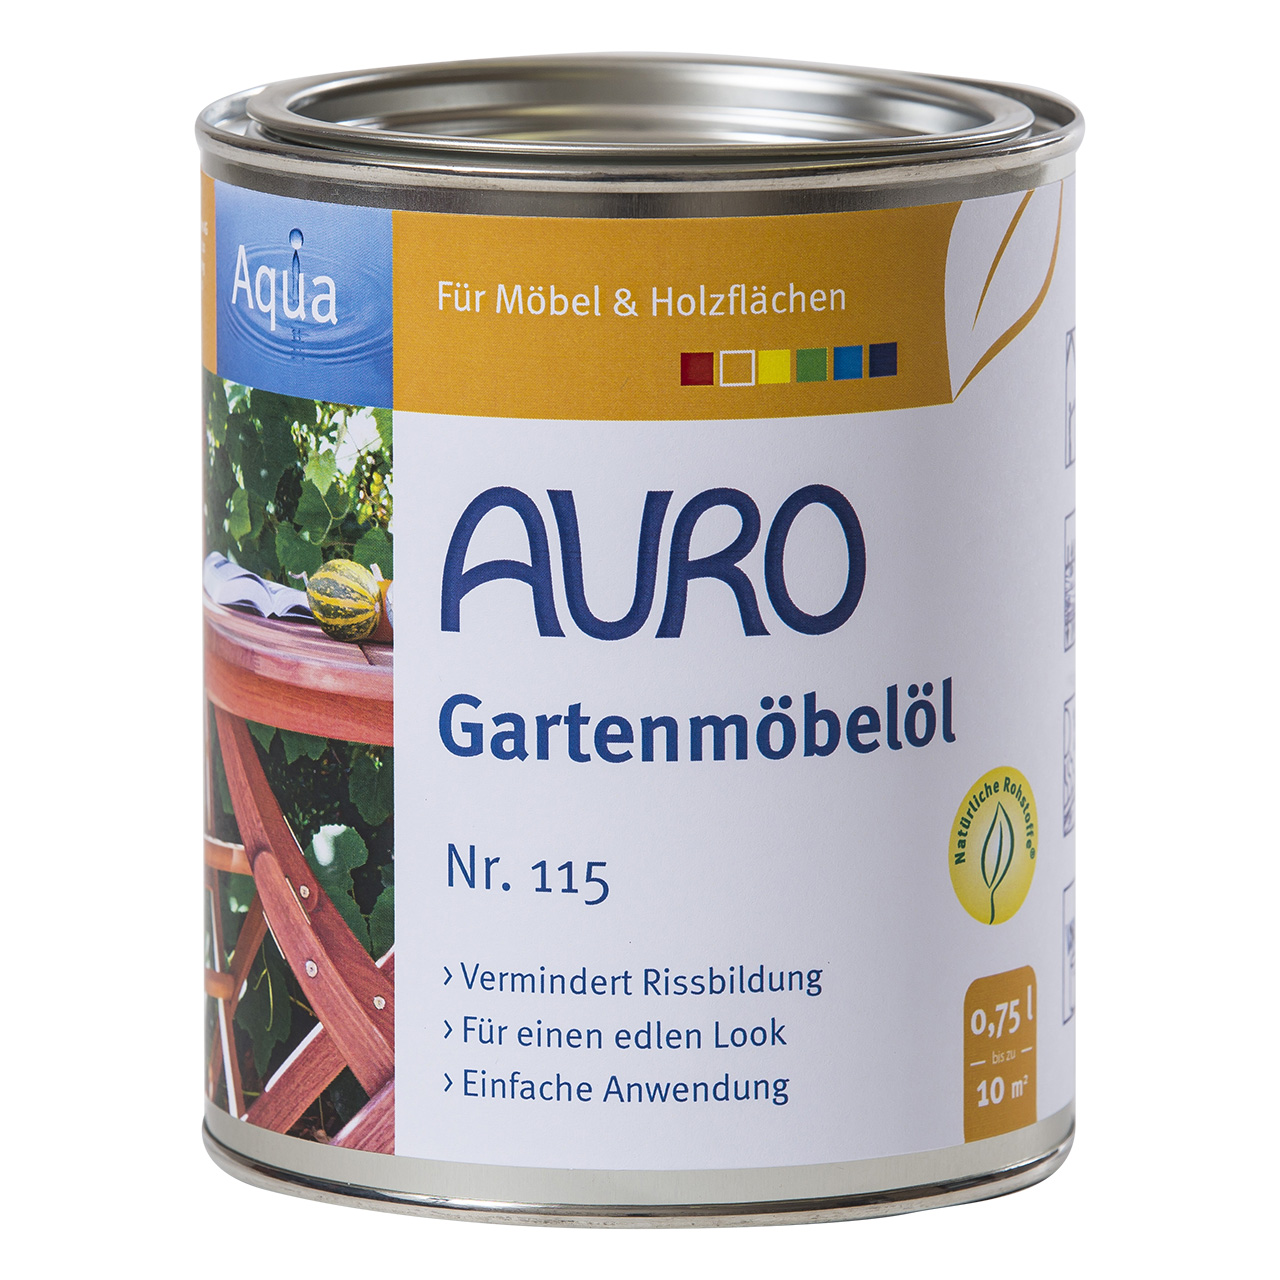 Auro Gartenmöbelöl Nr. 115, 750ml